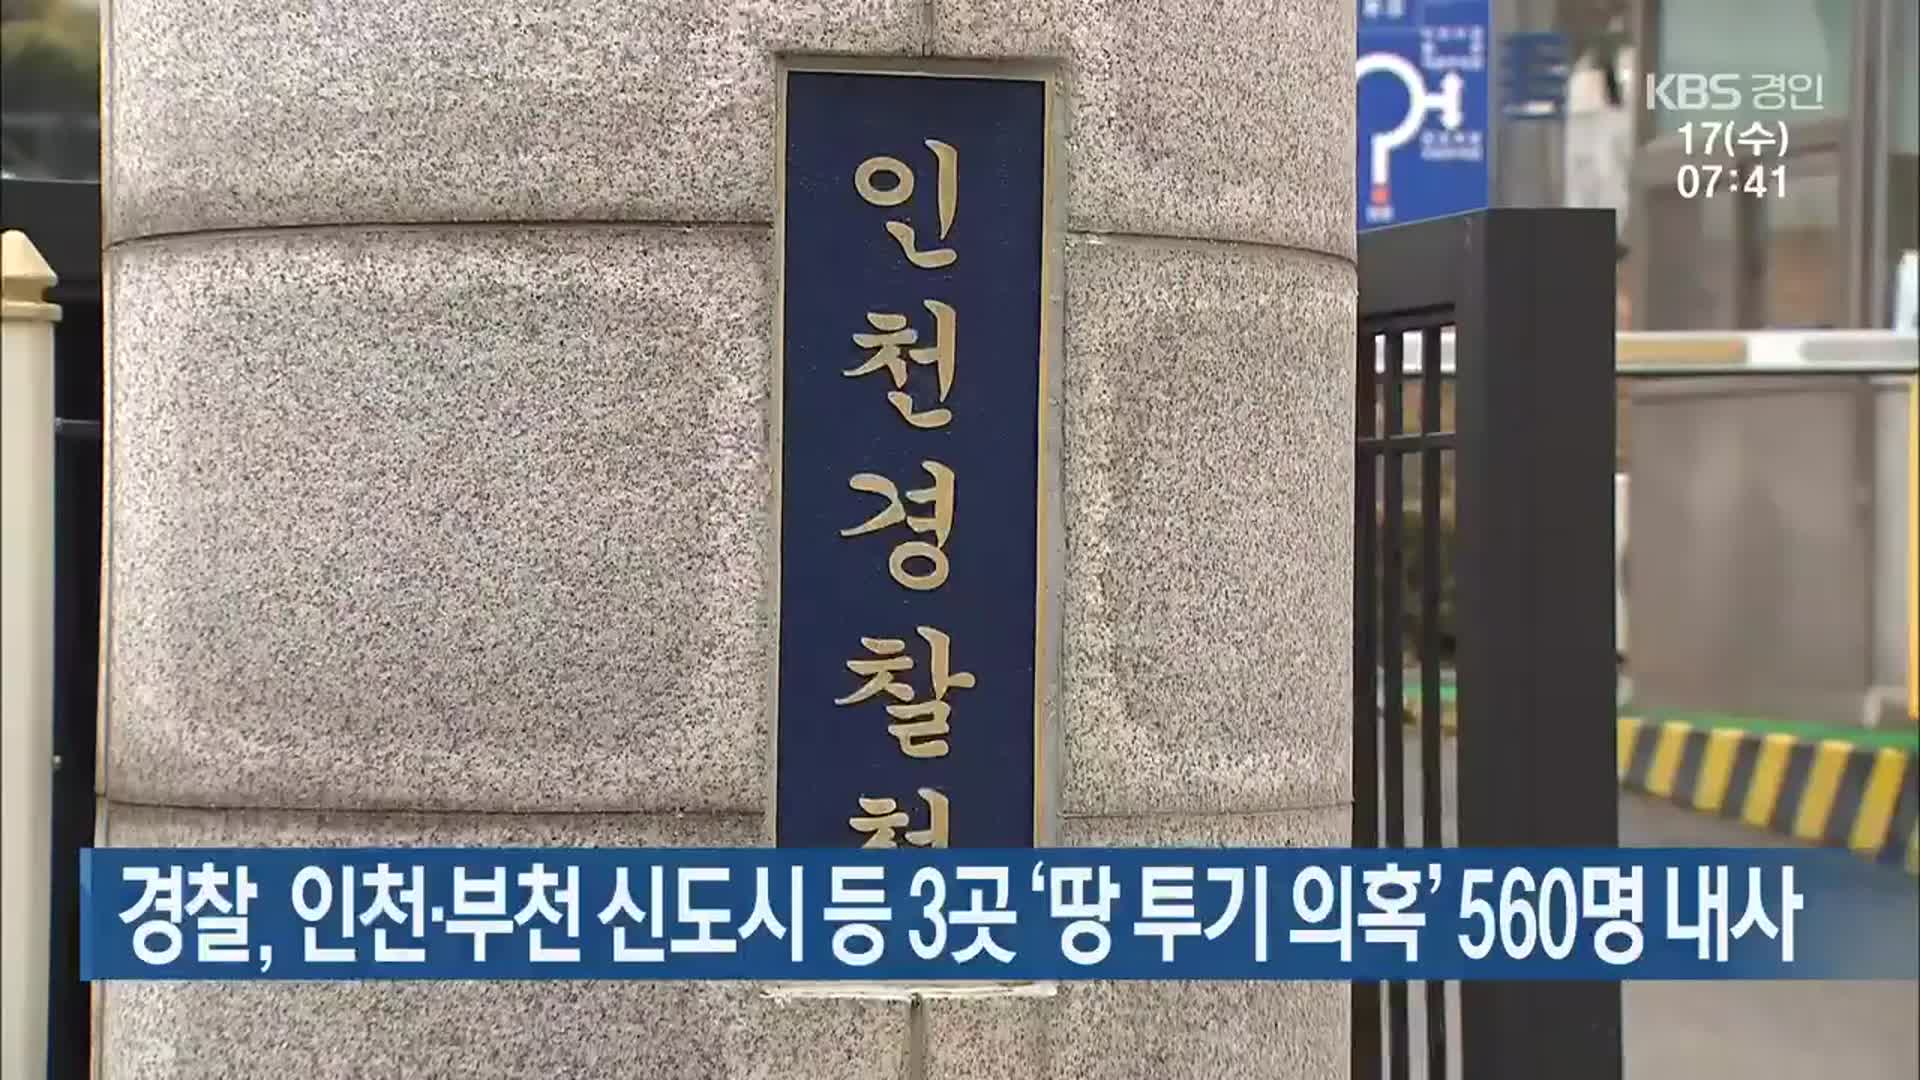 경찰, 인천·부천 신도시 등 3곳 ‘땅 투기 의혹’ 560명 내사